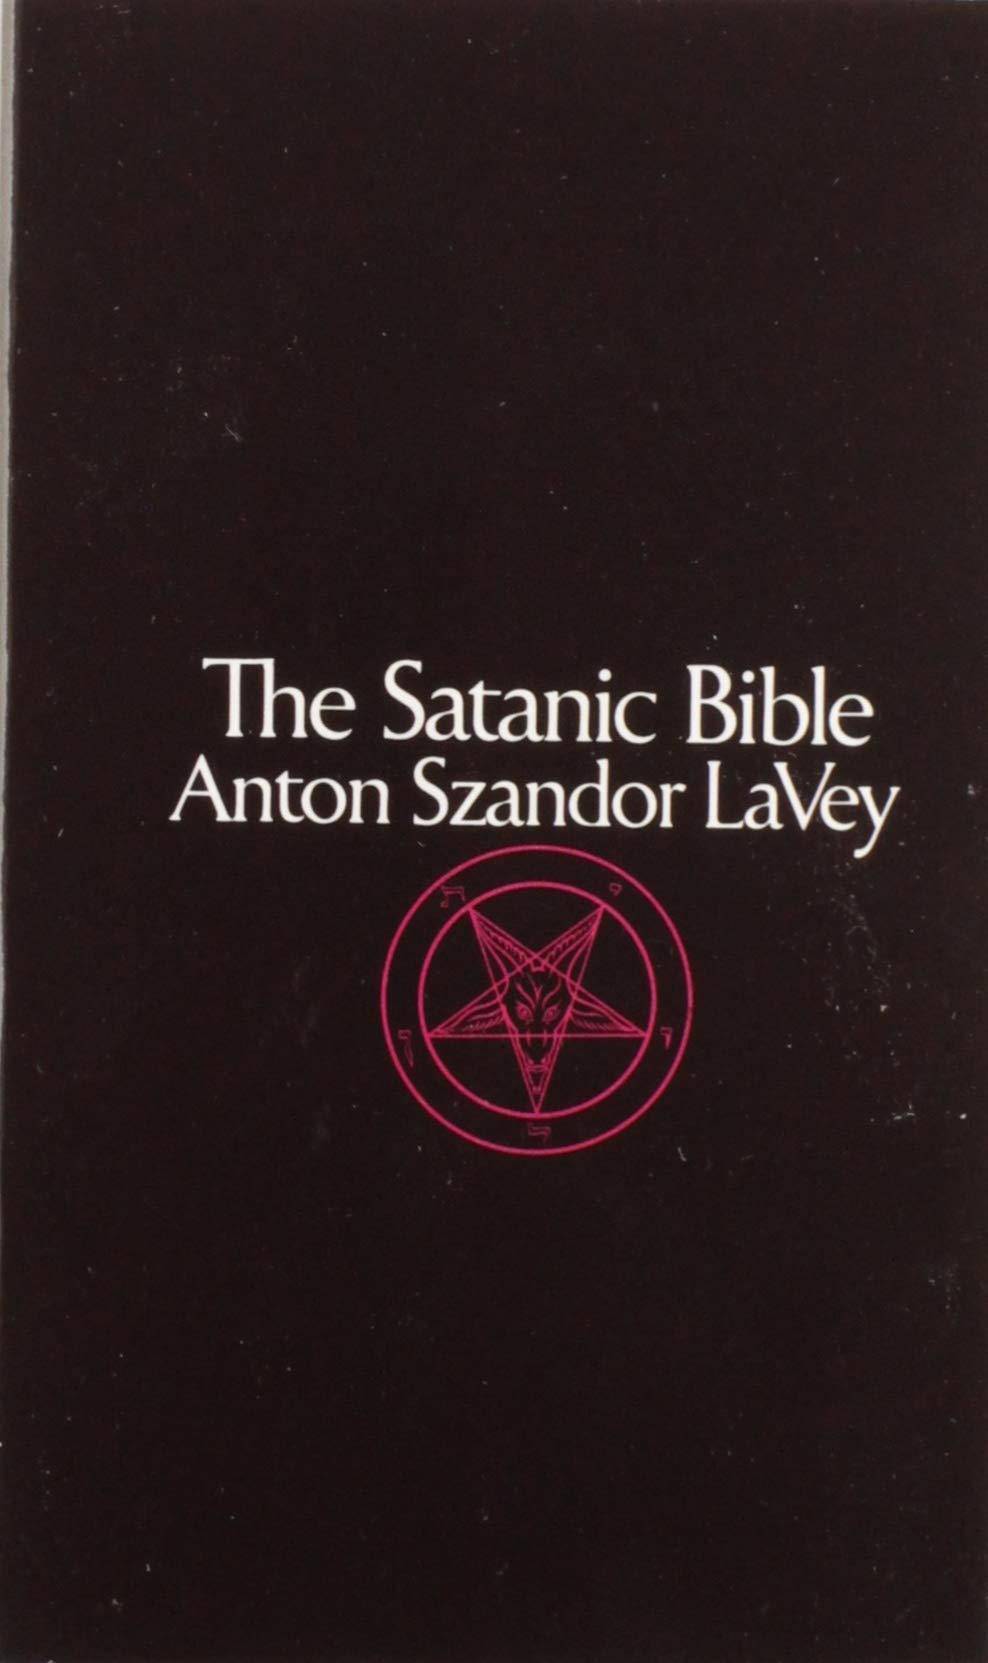 The Satanic Bible - SureShot Books Publishing LLC